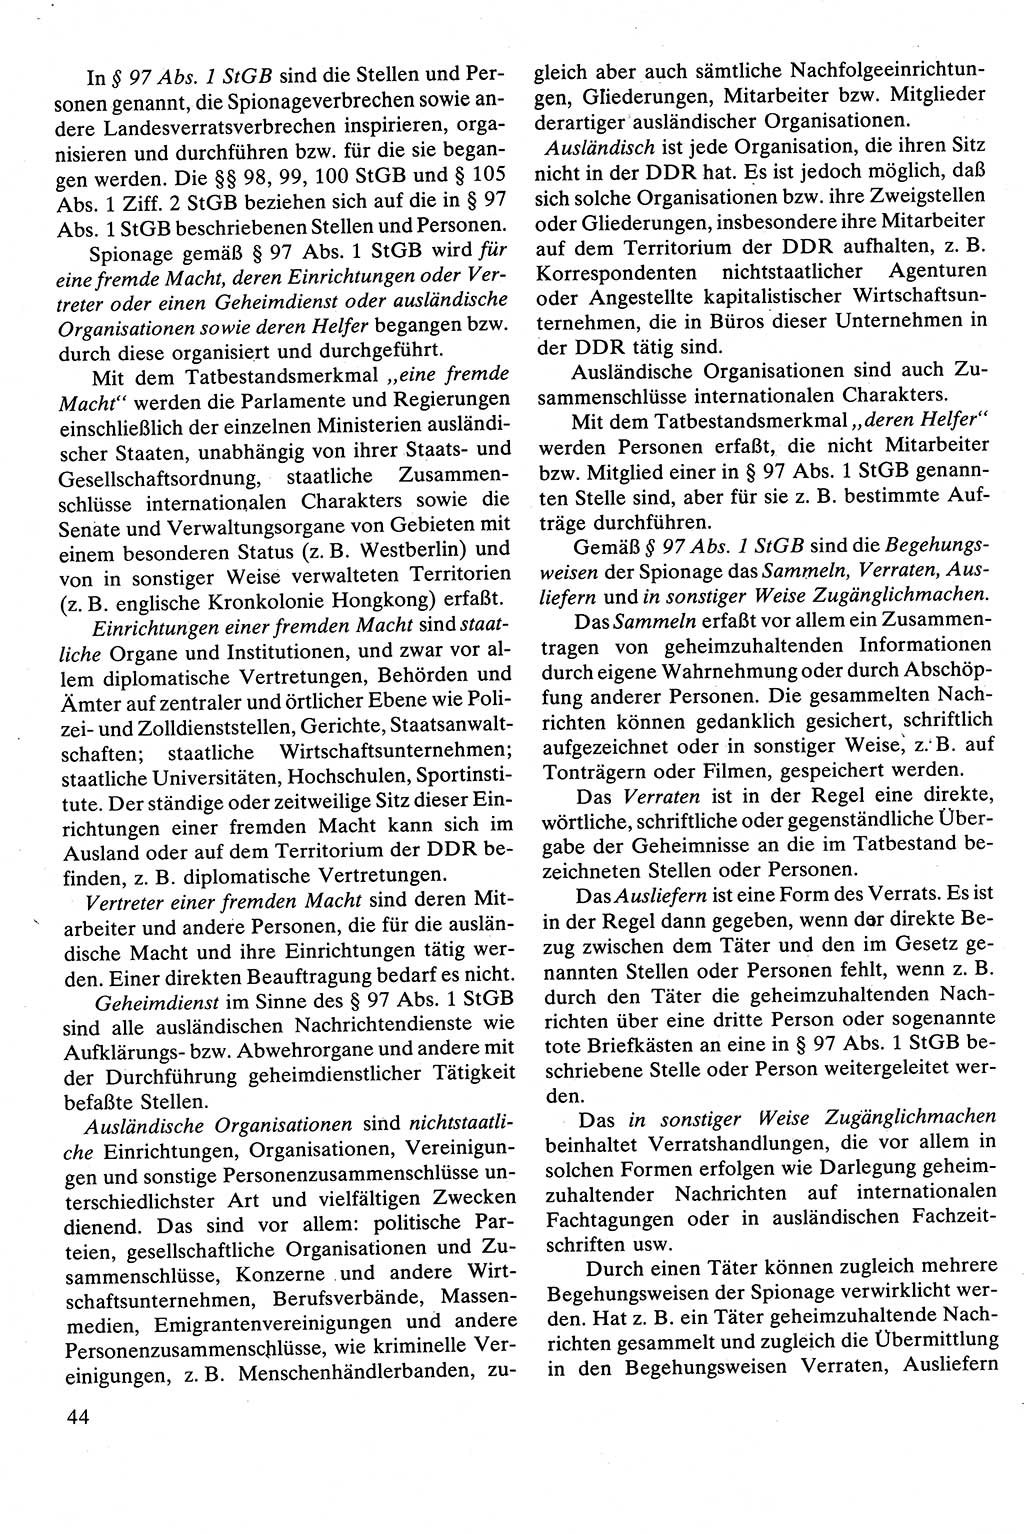 Strafrecht [Deutsche Demokratische Republik (DDR)], Besonderer Teil, Lehrbuch 1981, Seite 44 (Strafr. DDR BT Lb. 1981, S. 44)